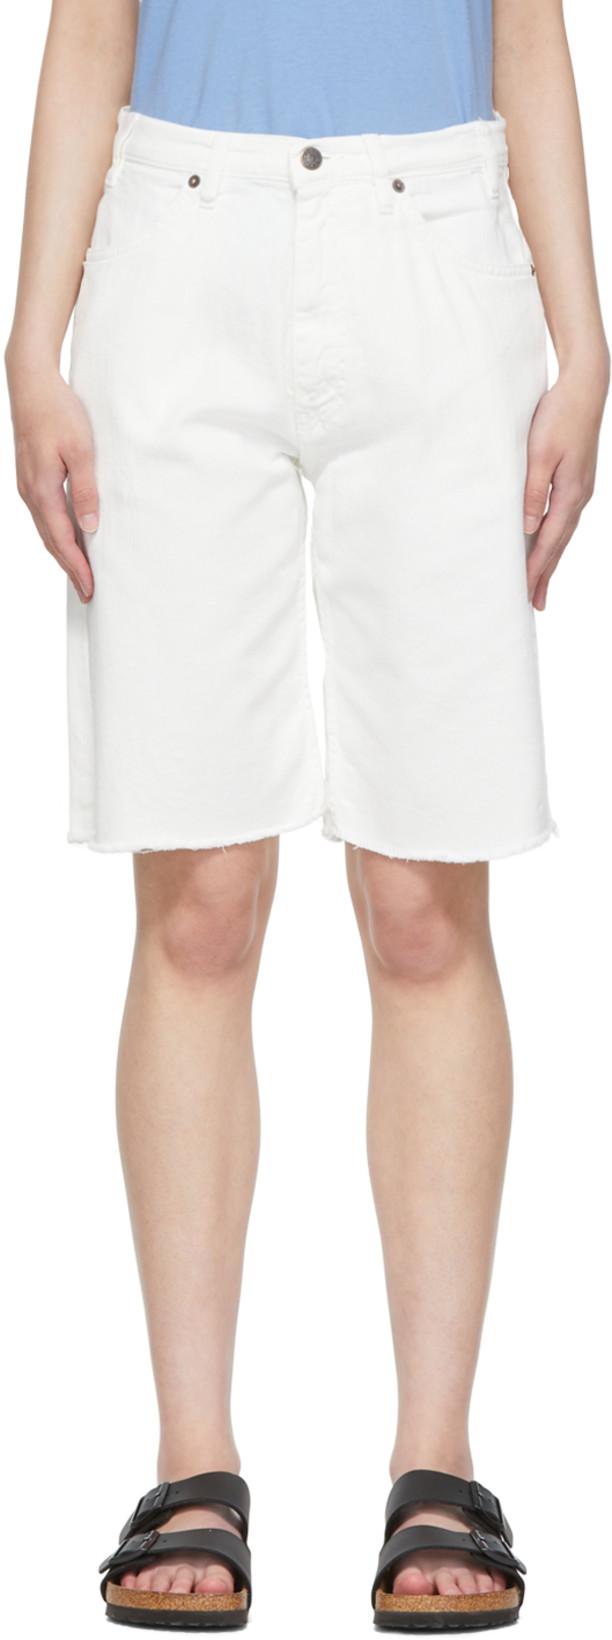 White Denim Shorts by 6397